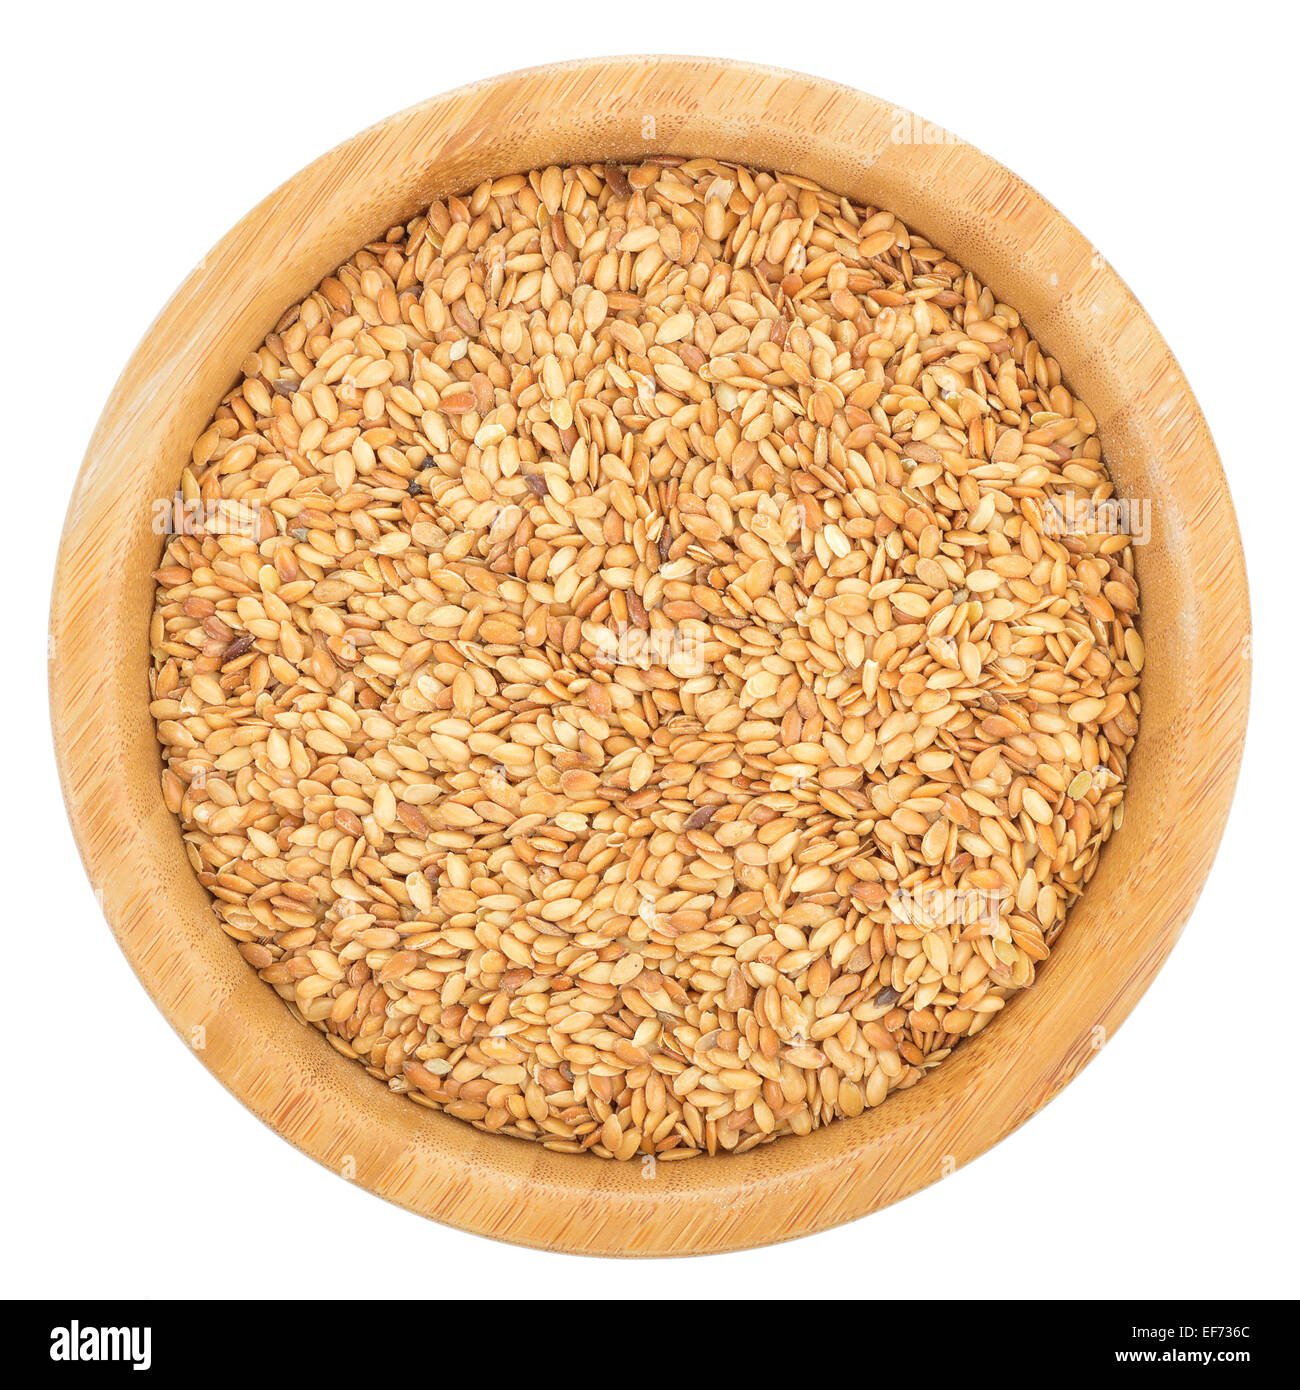 Golden semi di lino nella ciotola di legno isolato su sfondo bianco. Semi di lino sono ricchi in acido grasso omega-3. Vista dall'alto. Foto Stock